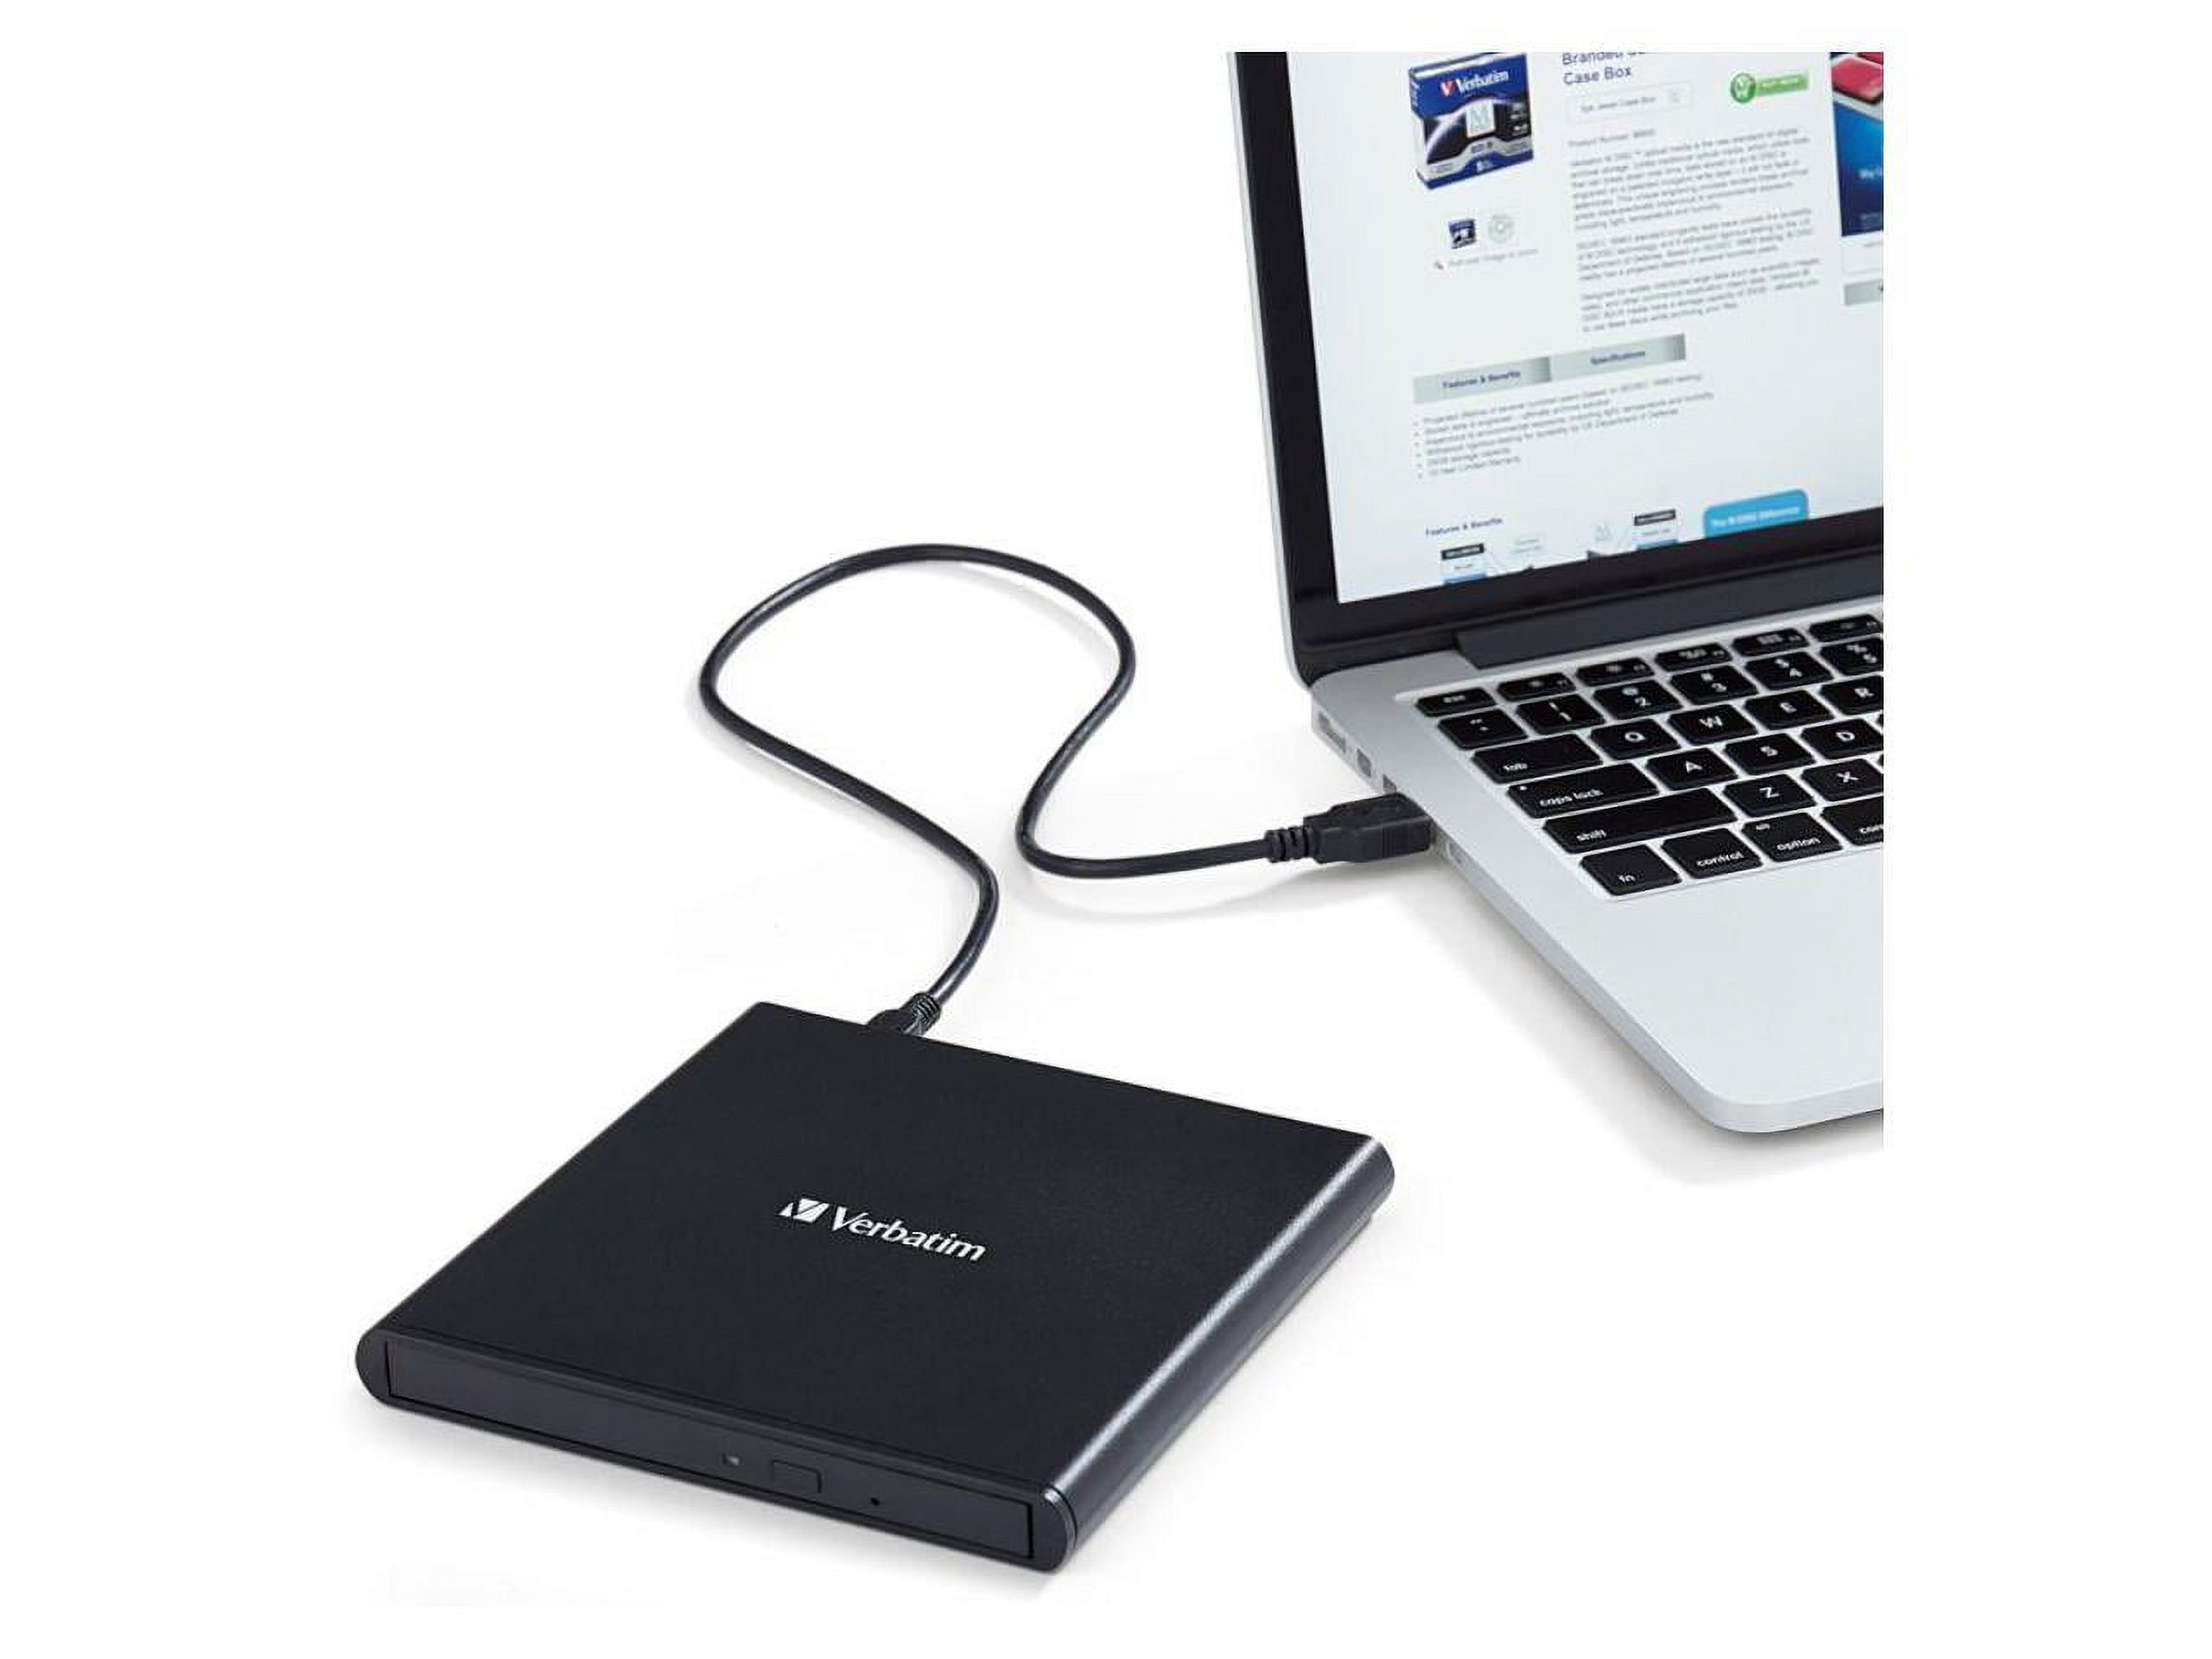 Verbatim USB External Slimline CD/DVD Writer Model 98938 - image 3 of 20